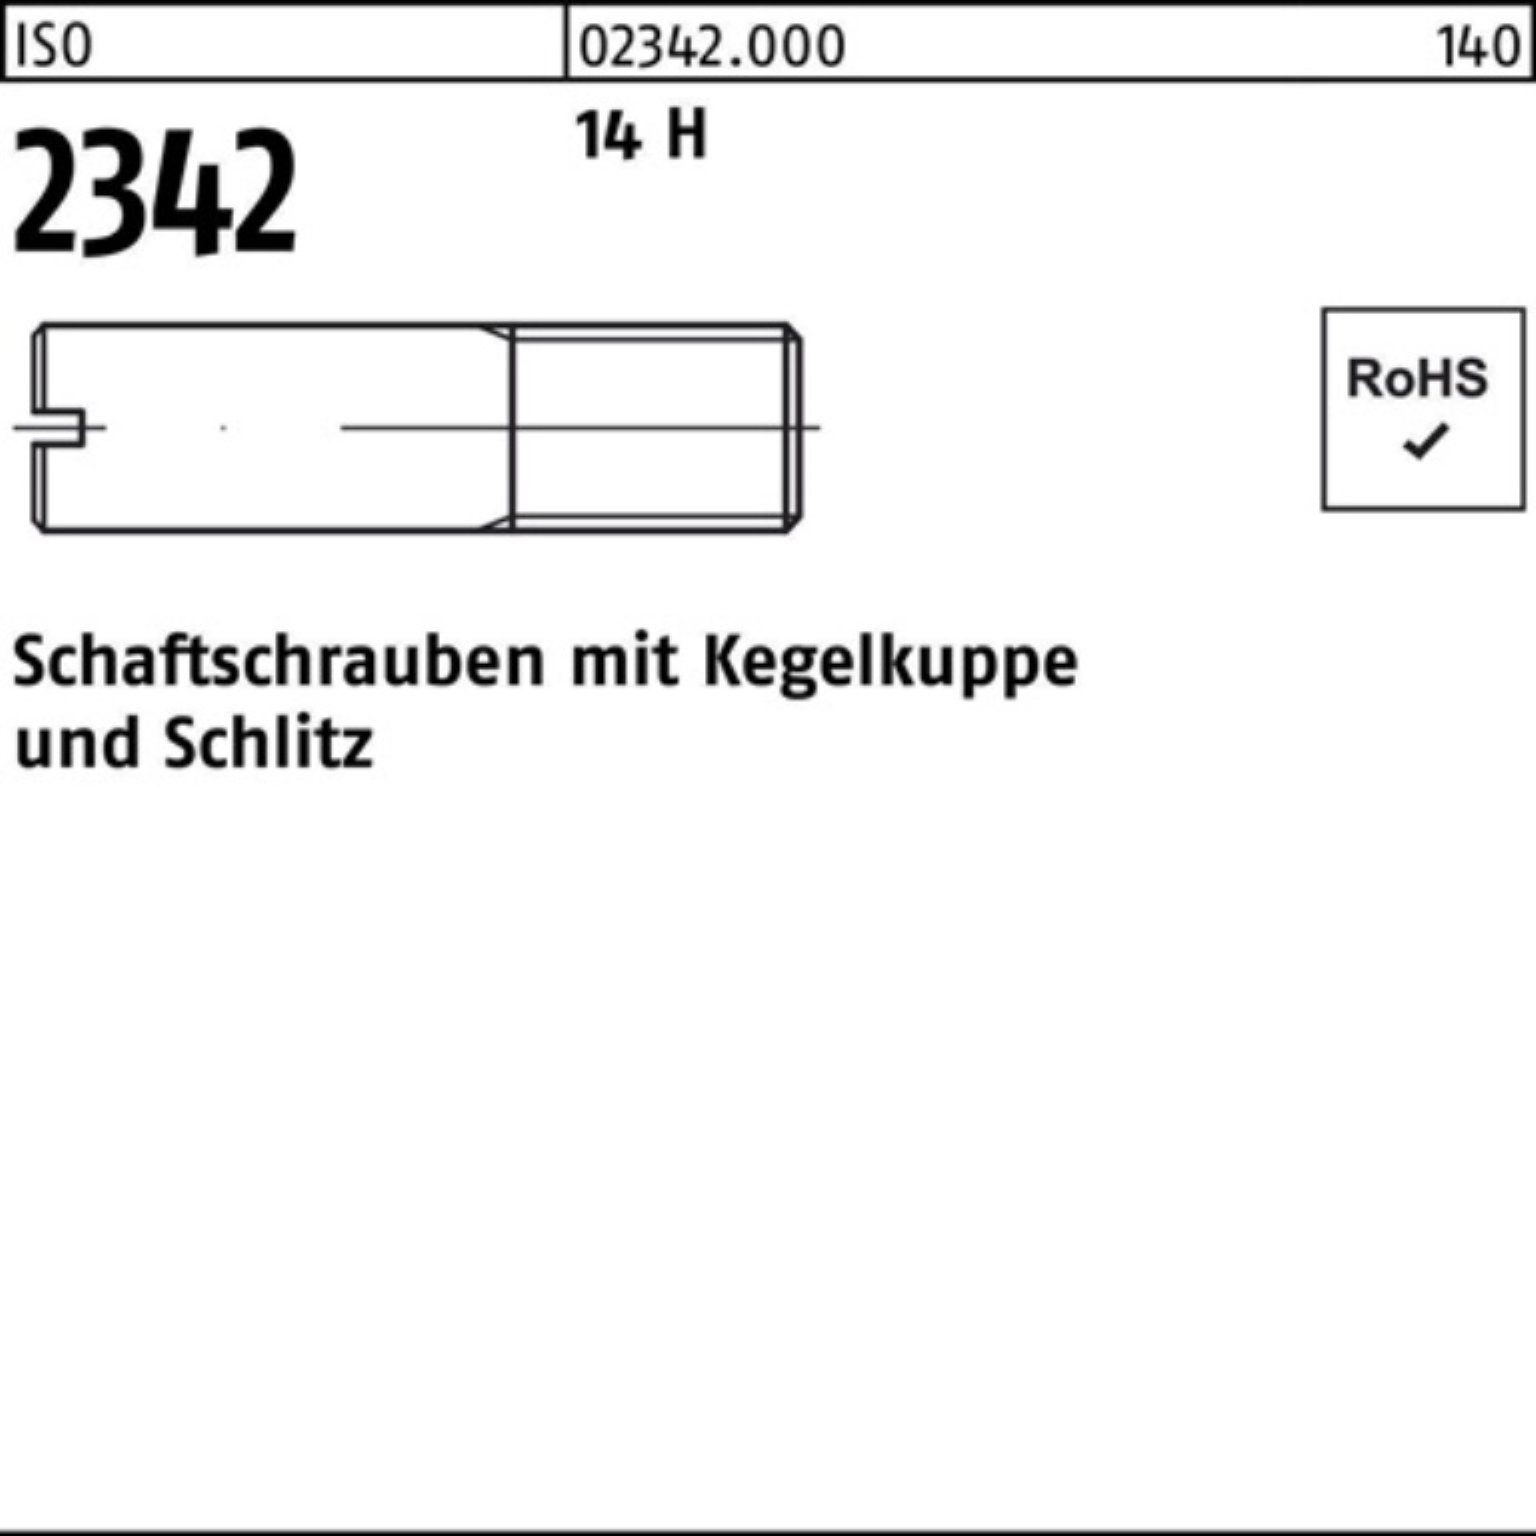 Reyher Schraube 100er Pack Schaftschraube ISO 2342 Kegelkuppe/Schlitz M8x 35 14 H 100